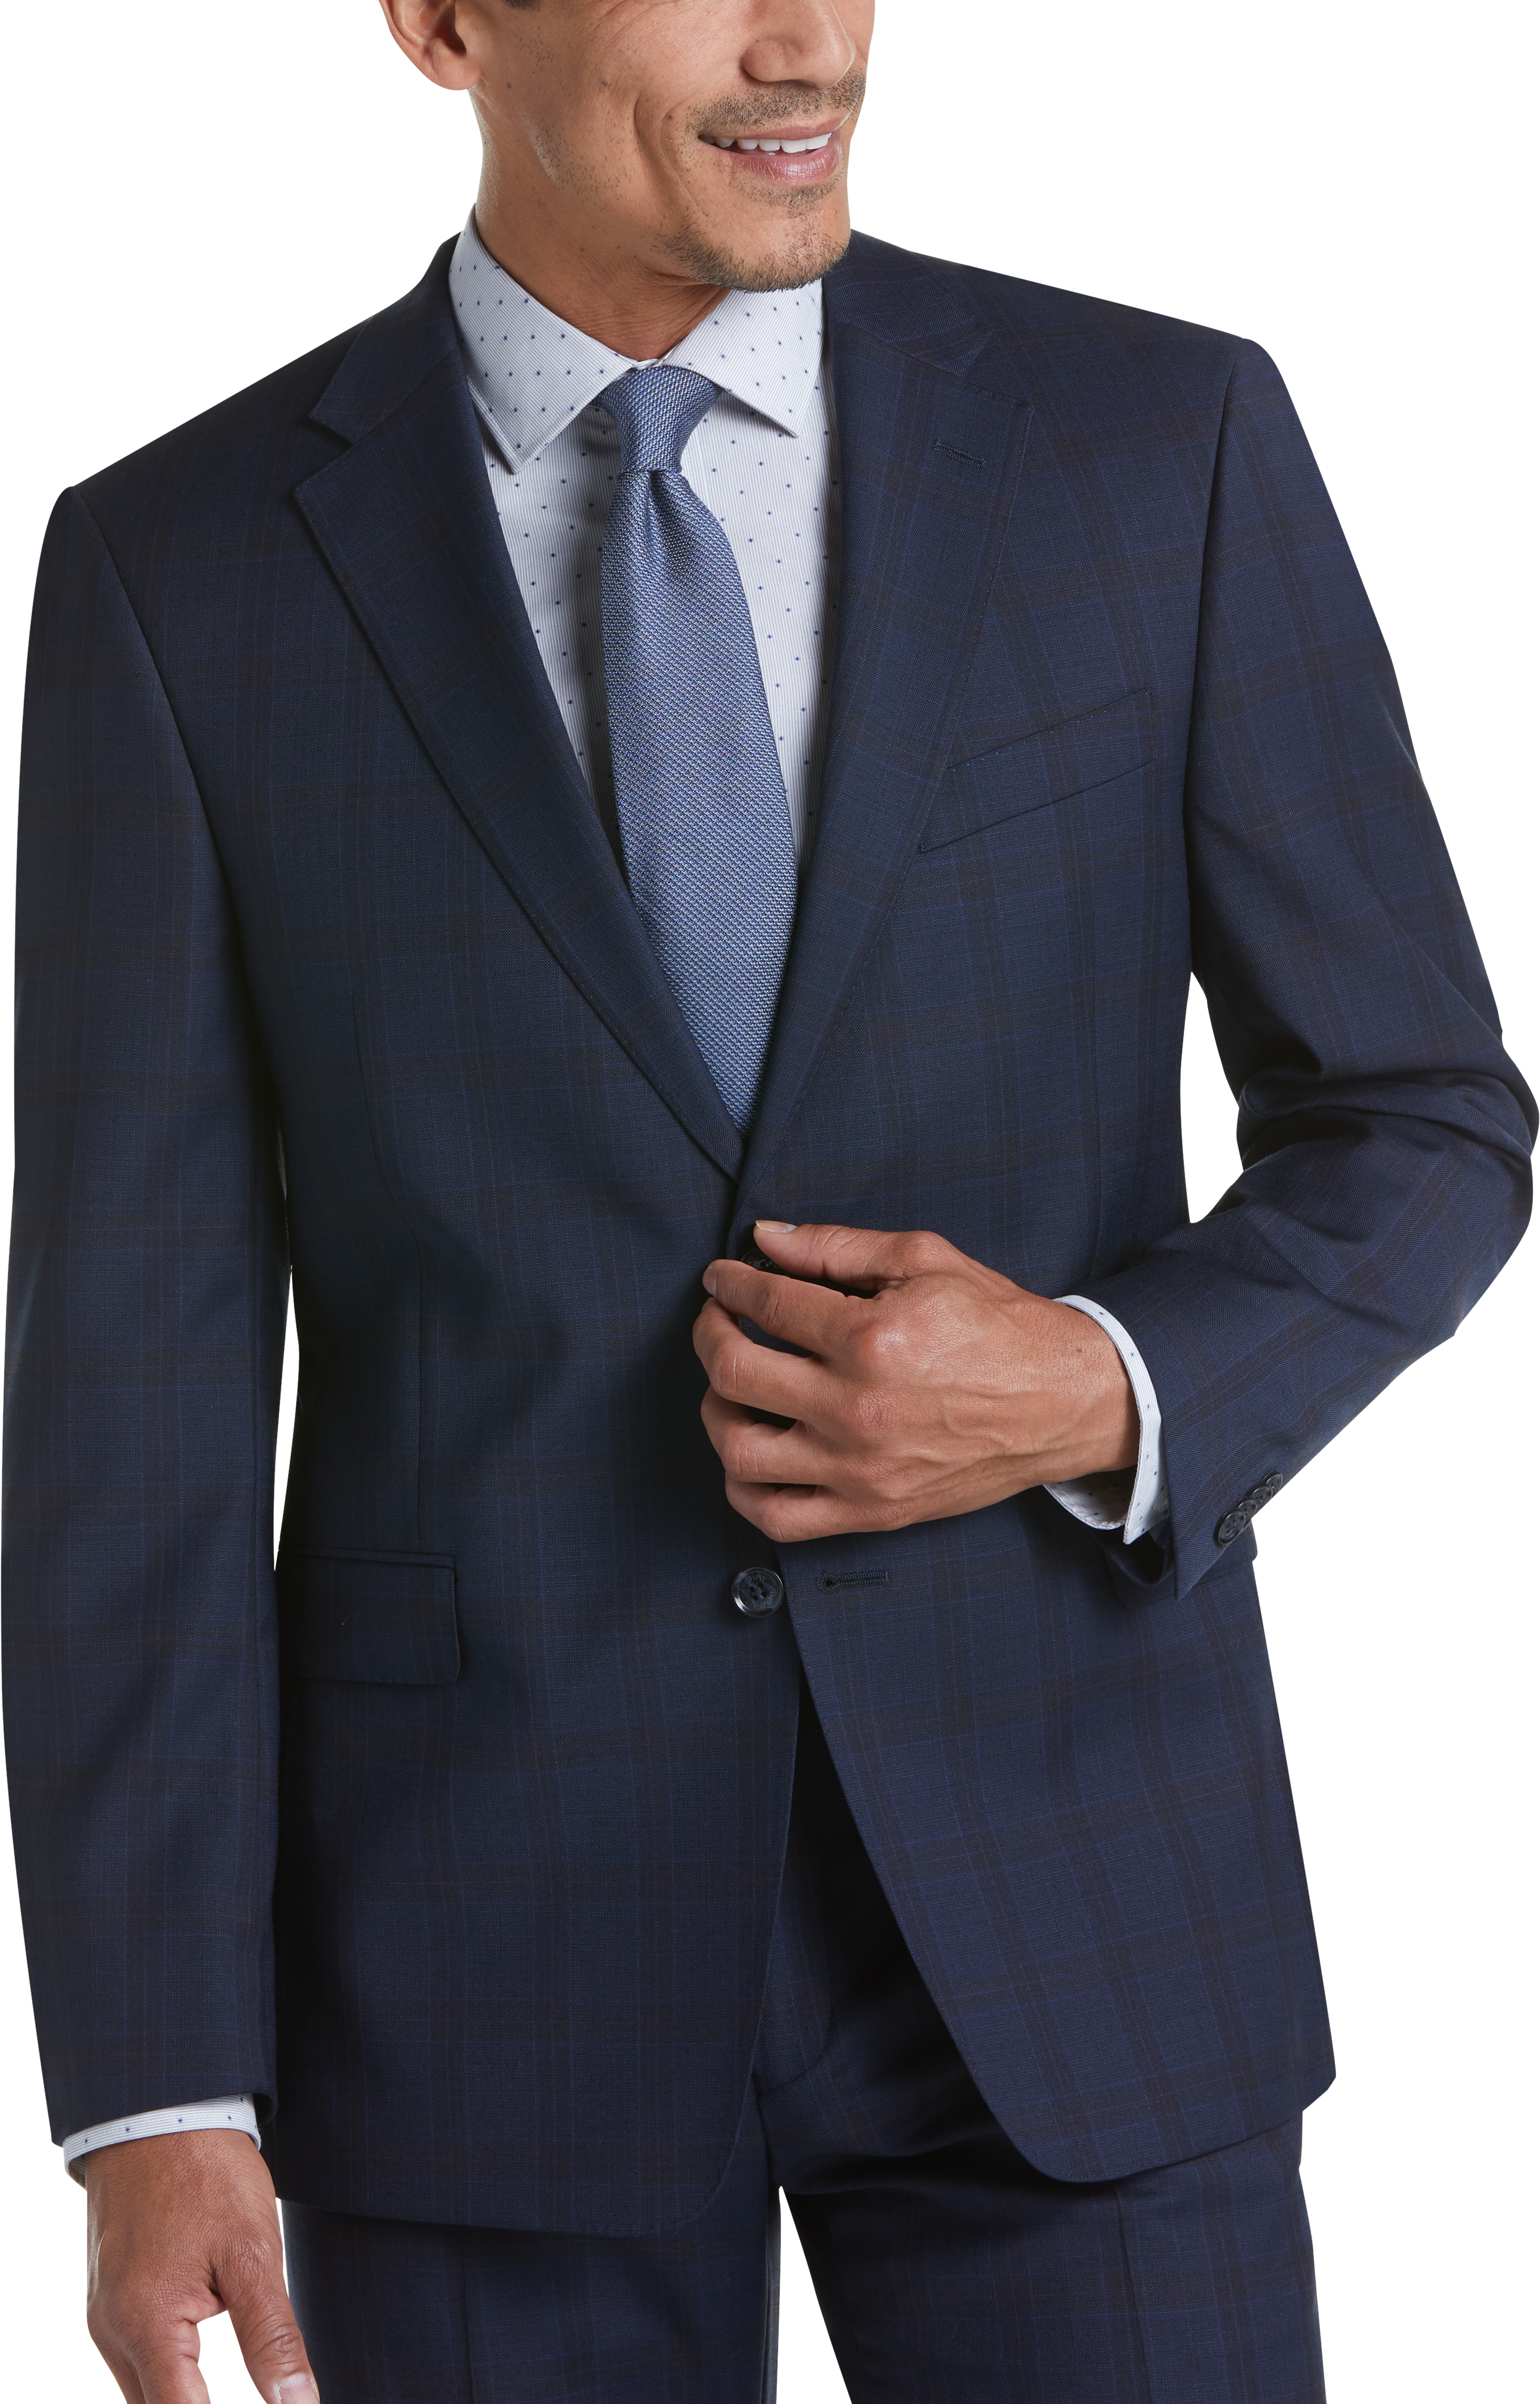 men's wearhouse tommy hilfiger suit